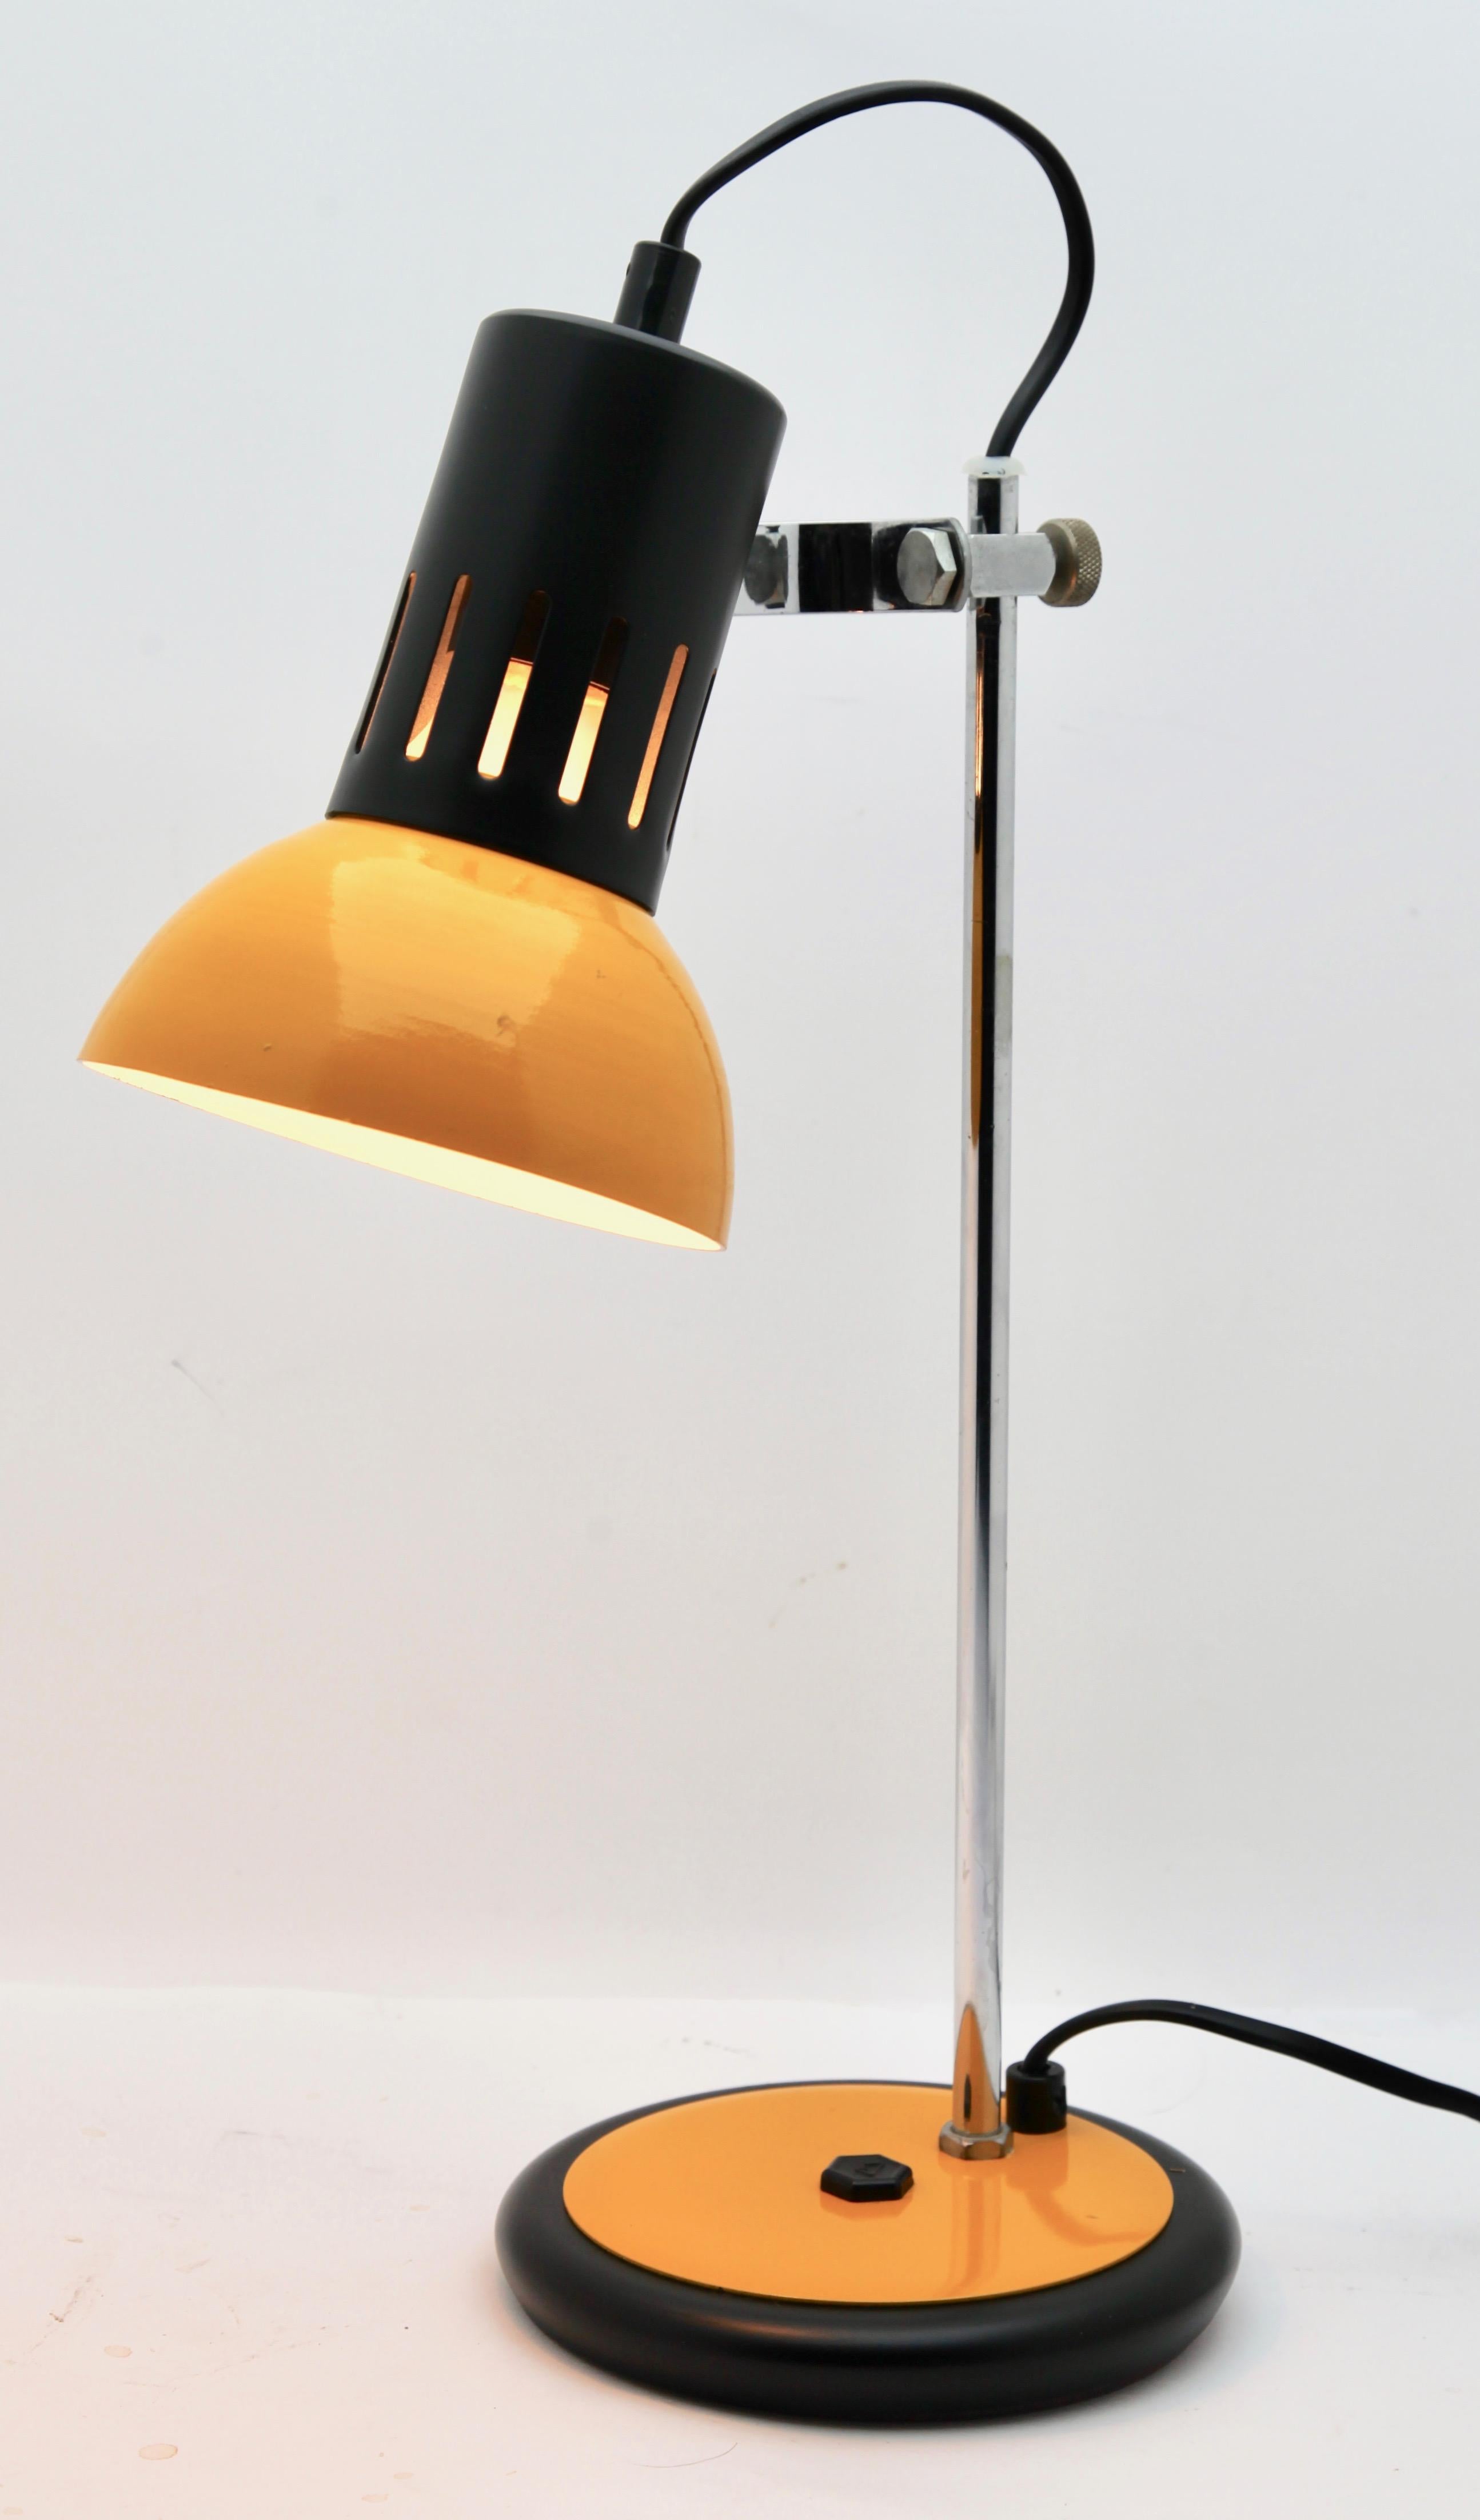 Aluminor-Lampe aus den 1970er Jahren aus gelbem Metall. Die Lampe ist in gutem Zustand und funktioniert sehr gut.
Diese bezaubernde Vintage-Lampe kann auf einem Schreibtisch, einem Nachttisch, einem Stück Sofa usw. landen. Er ist von seinem